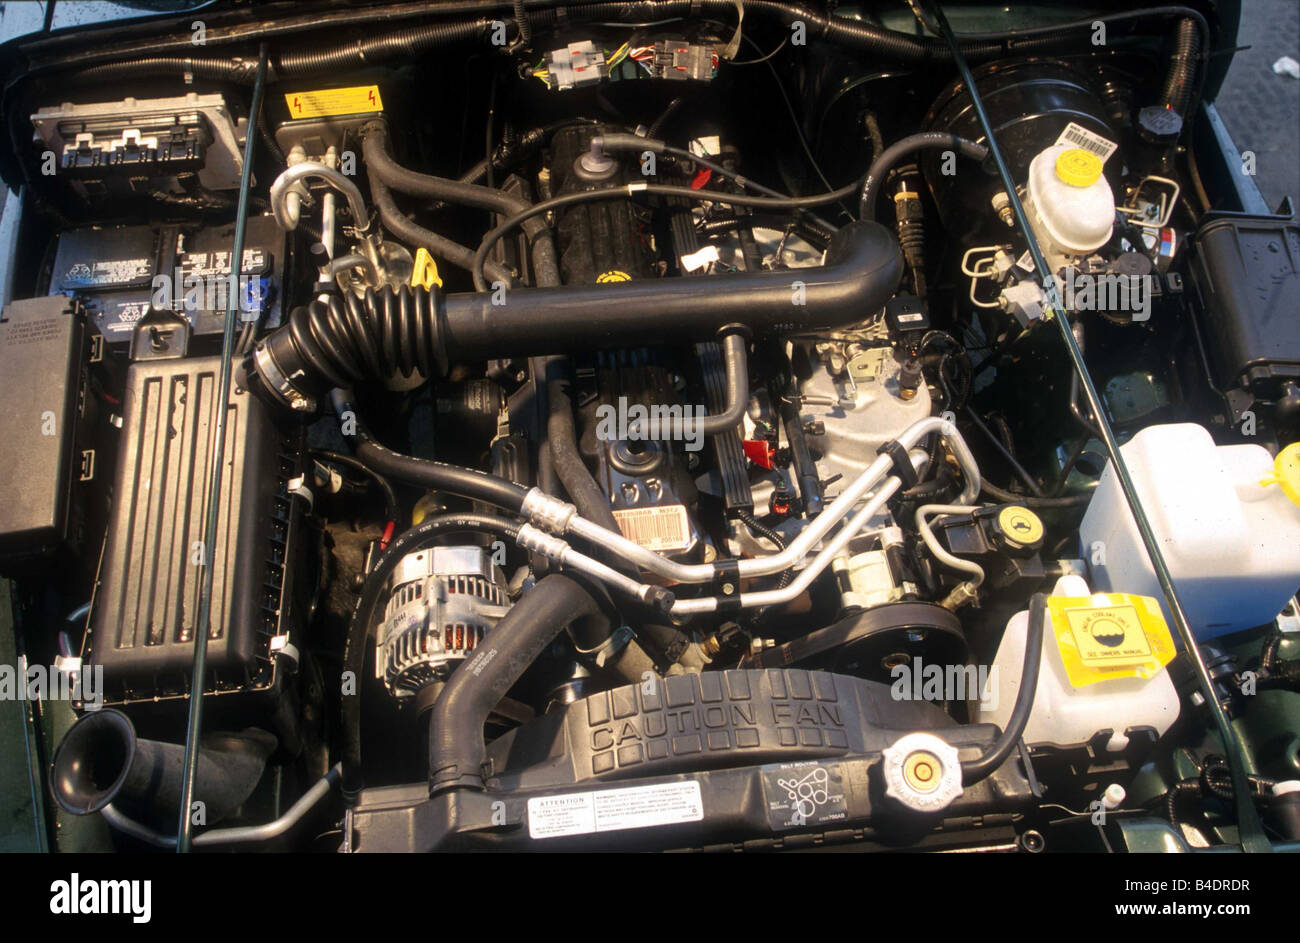 Voiture, Chrysler Jeep Wrangler 4.0, cross country de l'année modèle 1996,  véhicule, d'une vue dans le compartiment moteur, le moteur,  l'accesseur/technique Photo Stock - Alamy